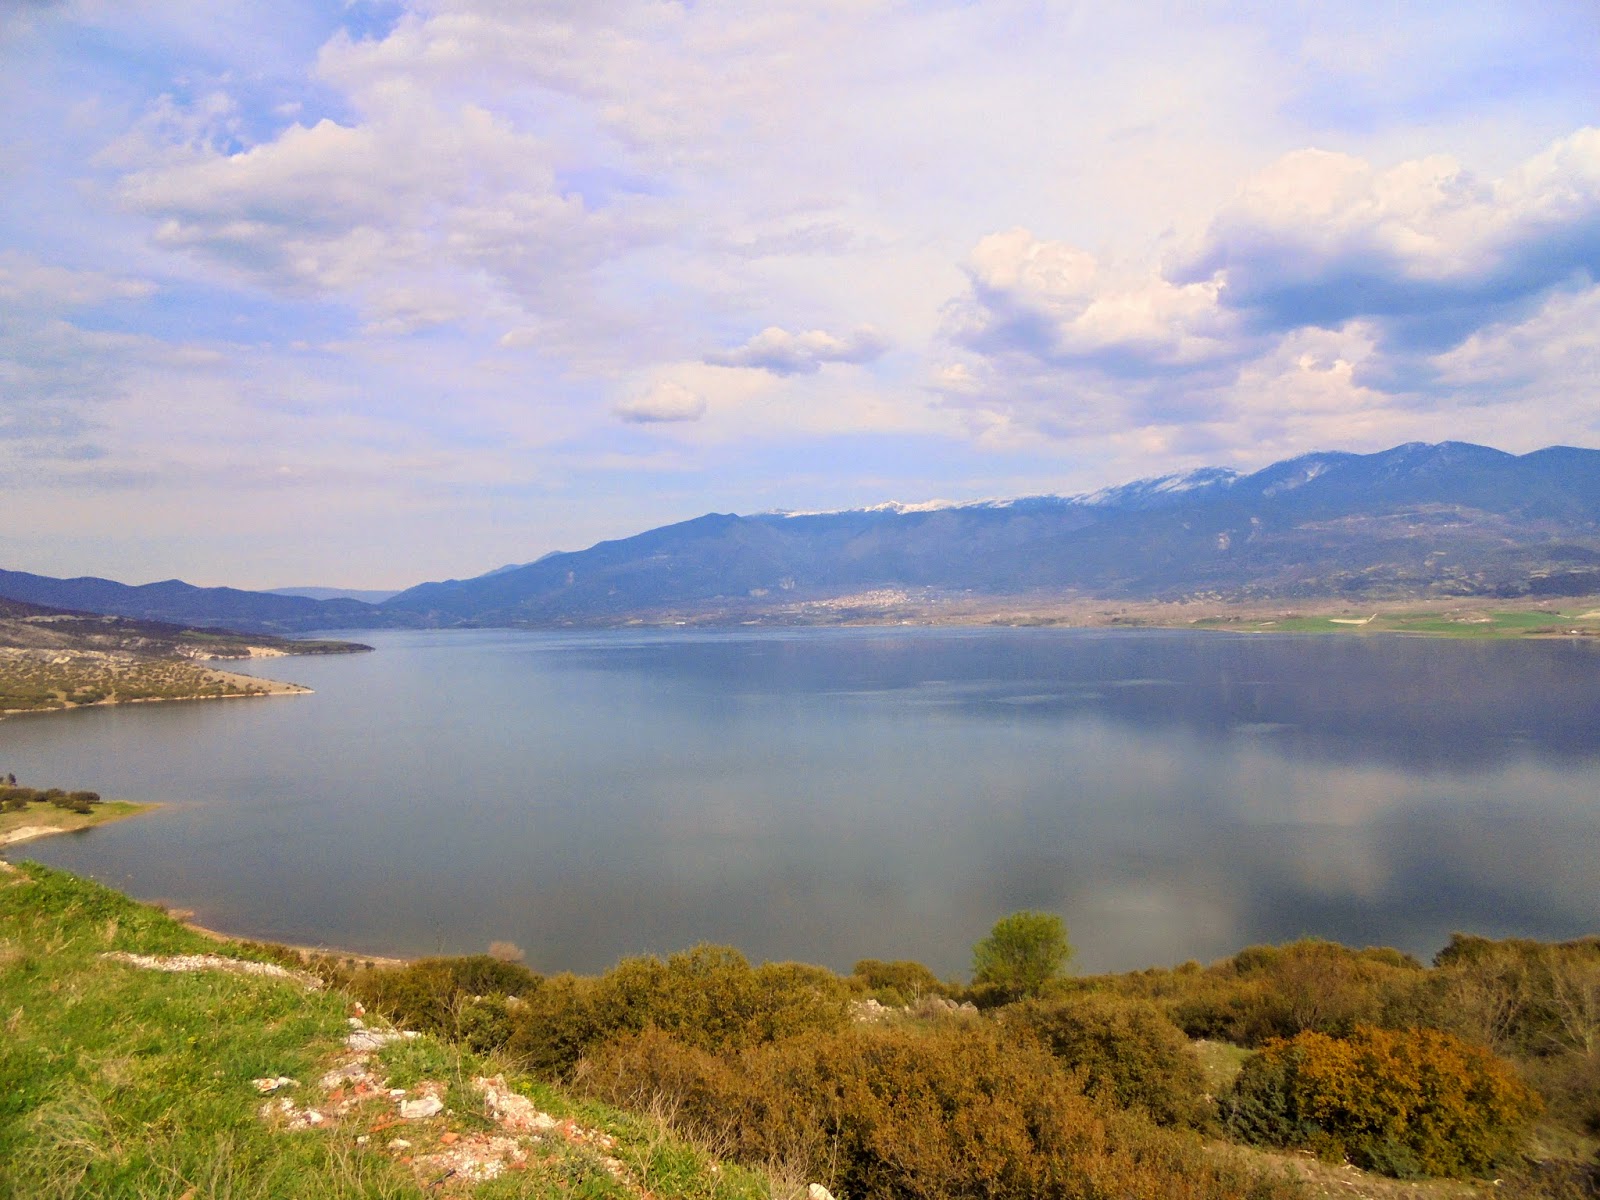 τεχνητή λίμνη Πολυφύτου στο νομό Κοζάνης